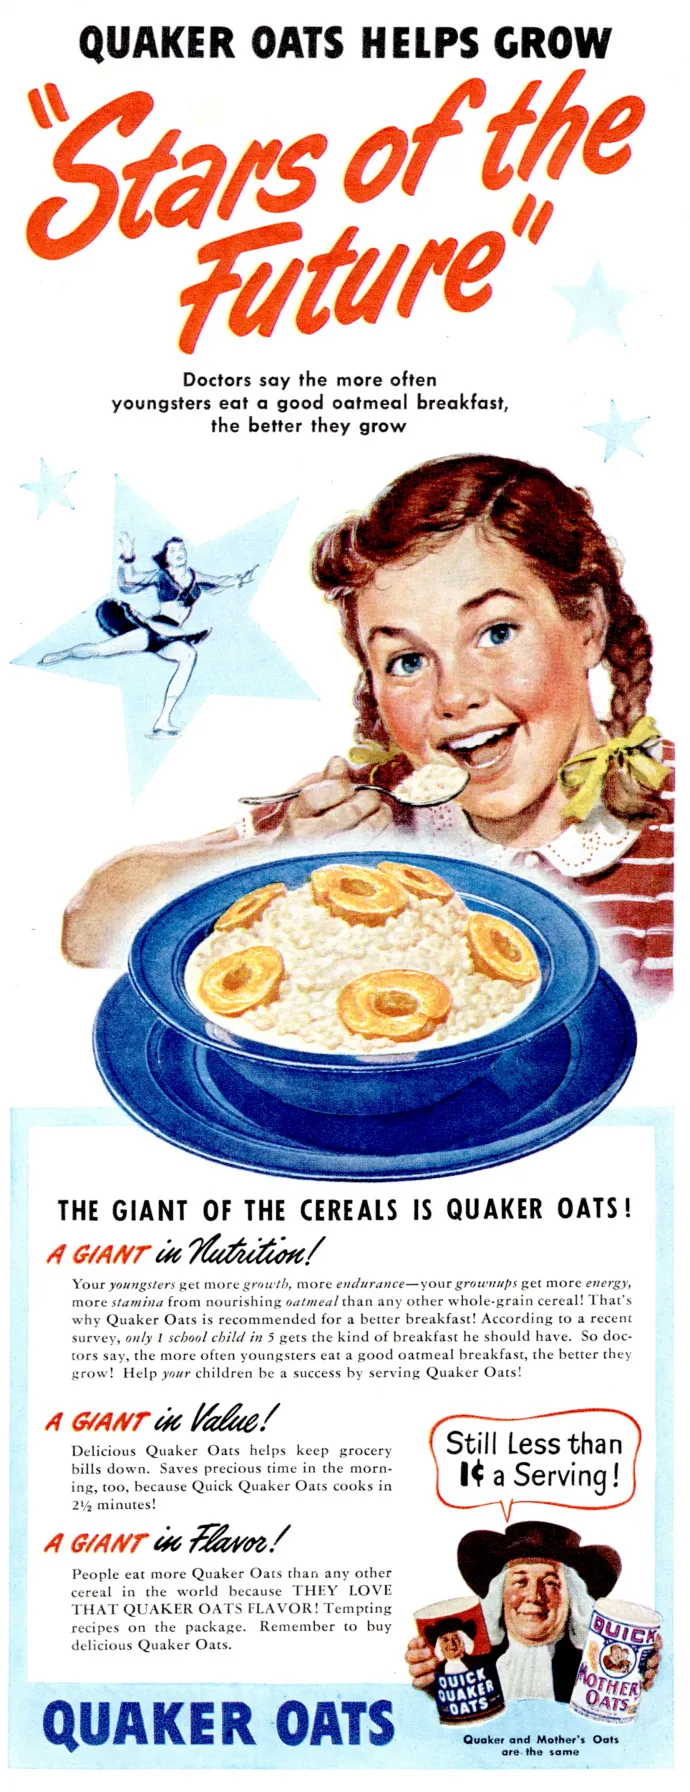 A Quaker a terméke táplálóságára felhúzott hirdetése – Fotó: Apic / Getty Images